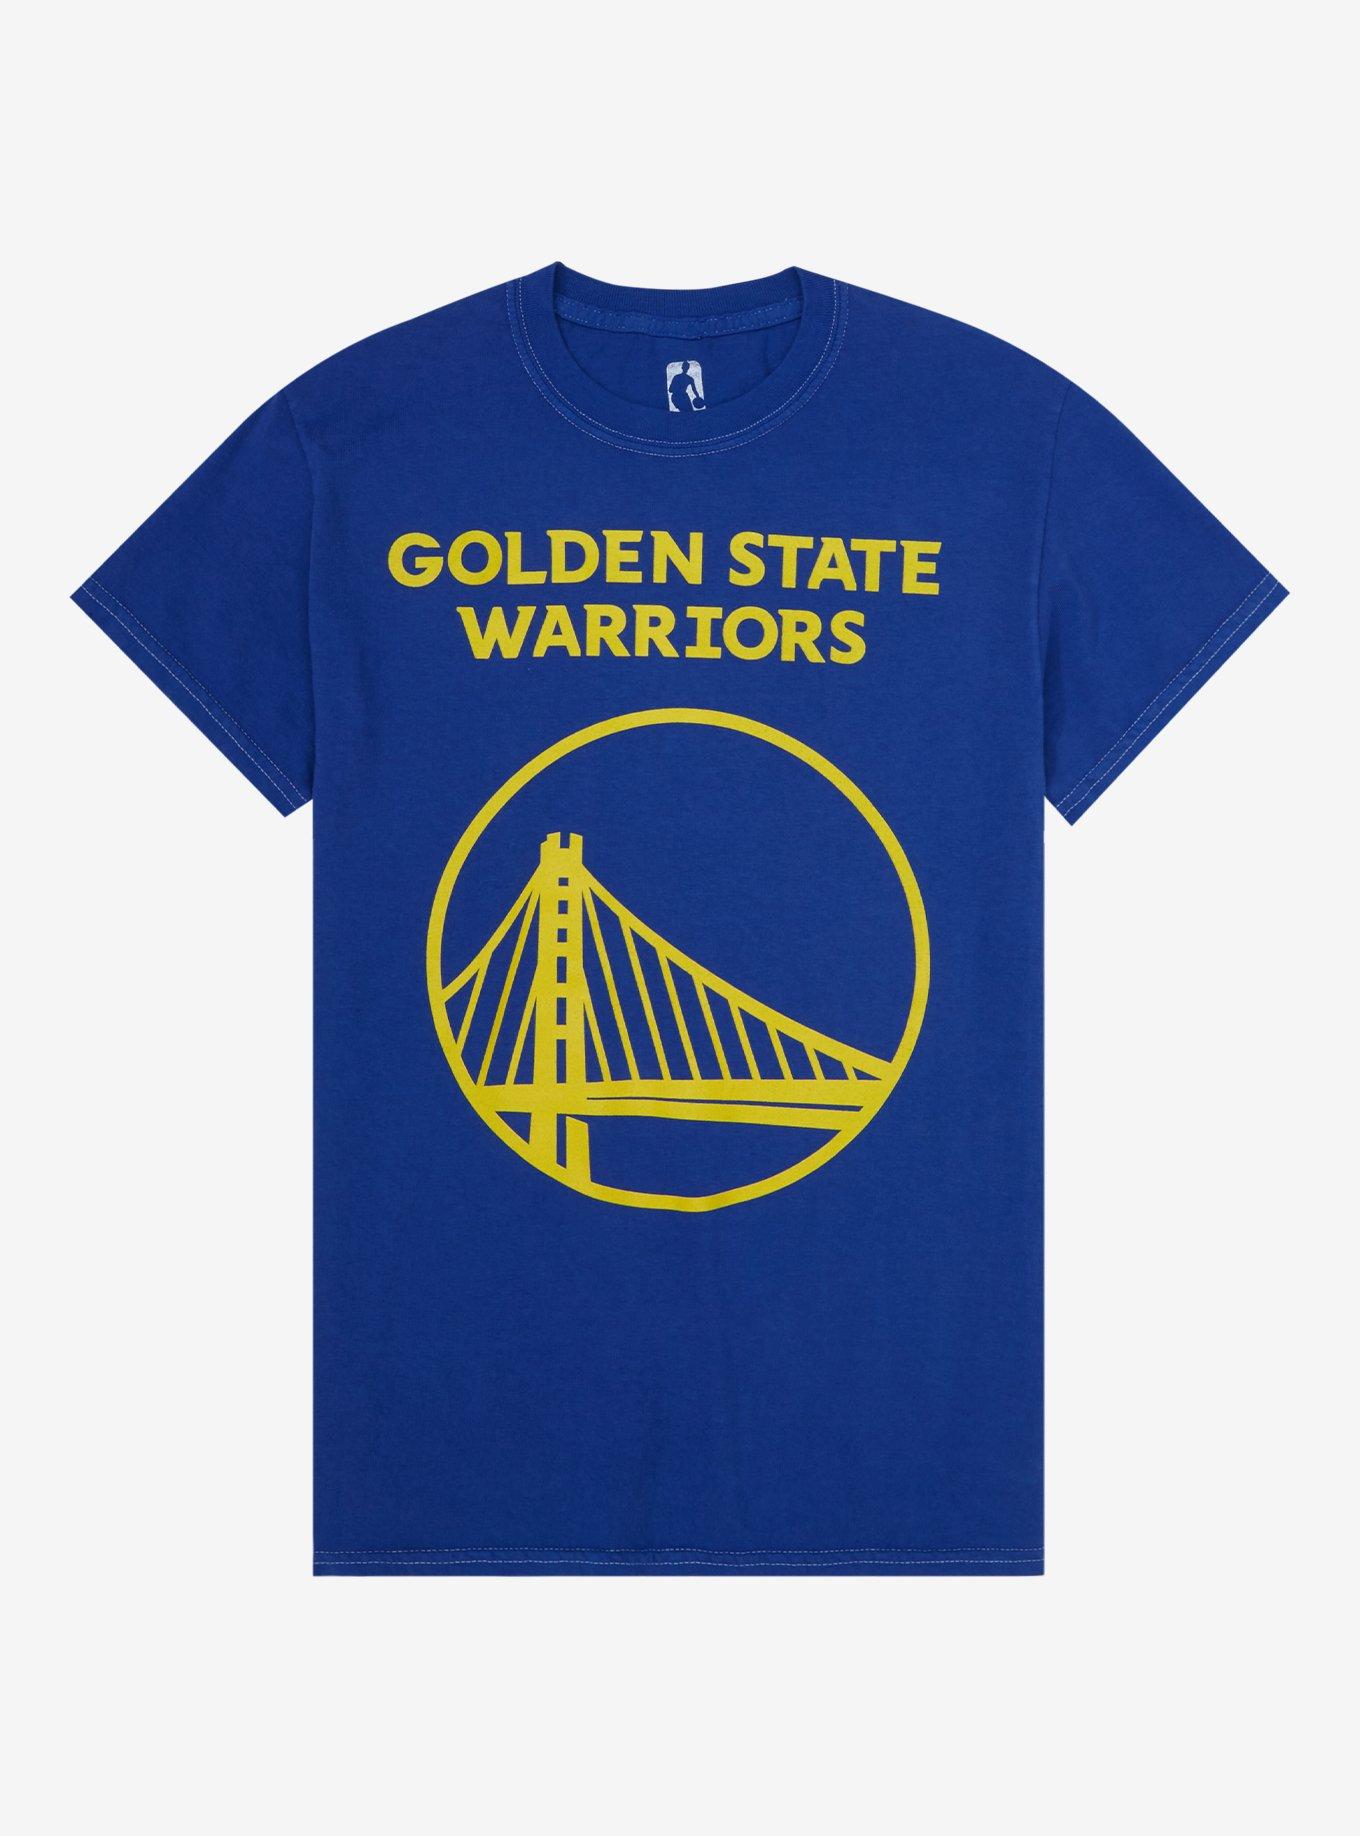 golden state warriors t shirt